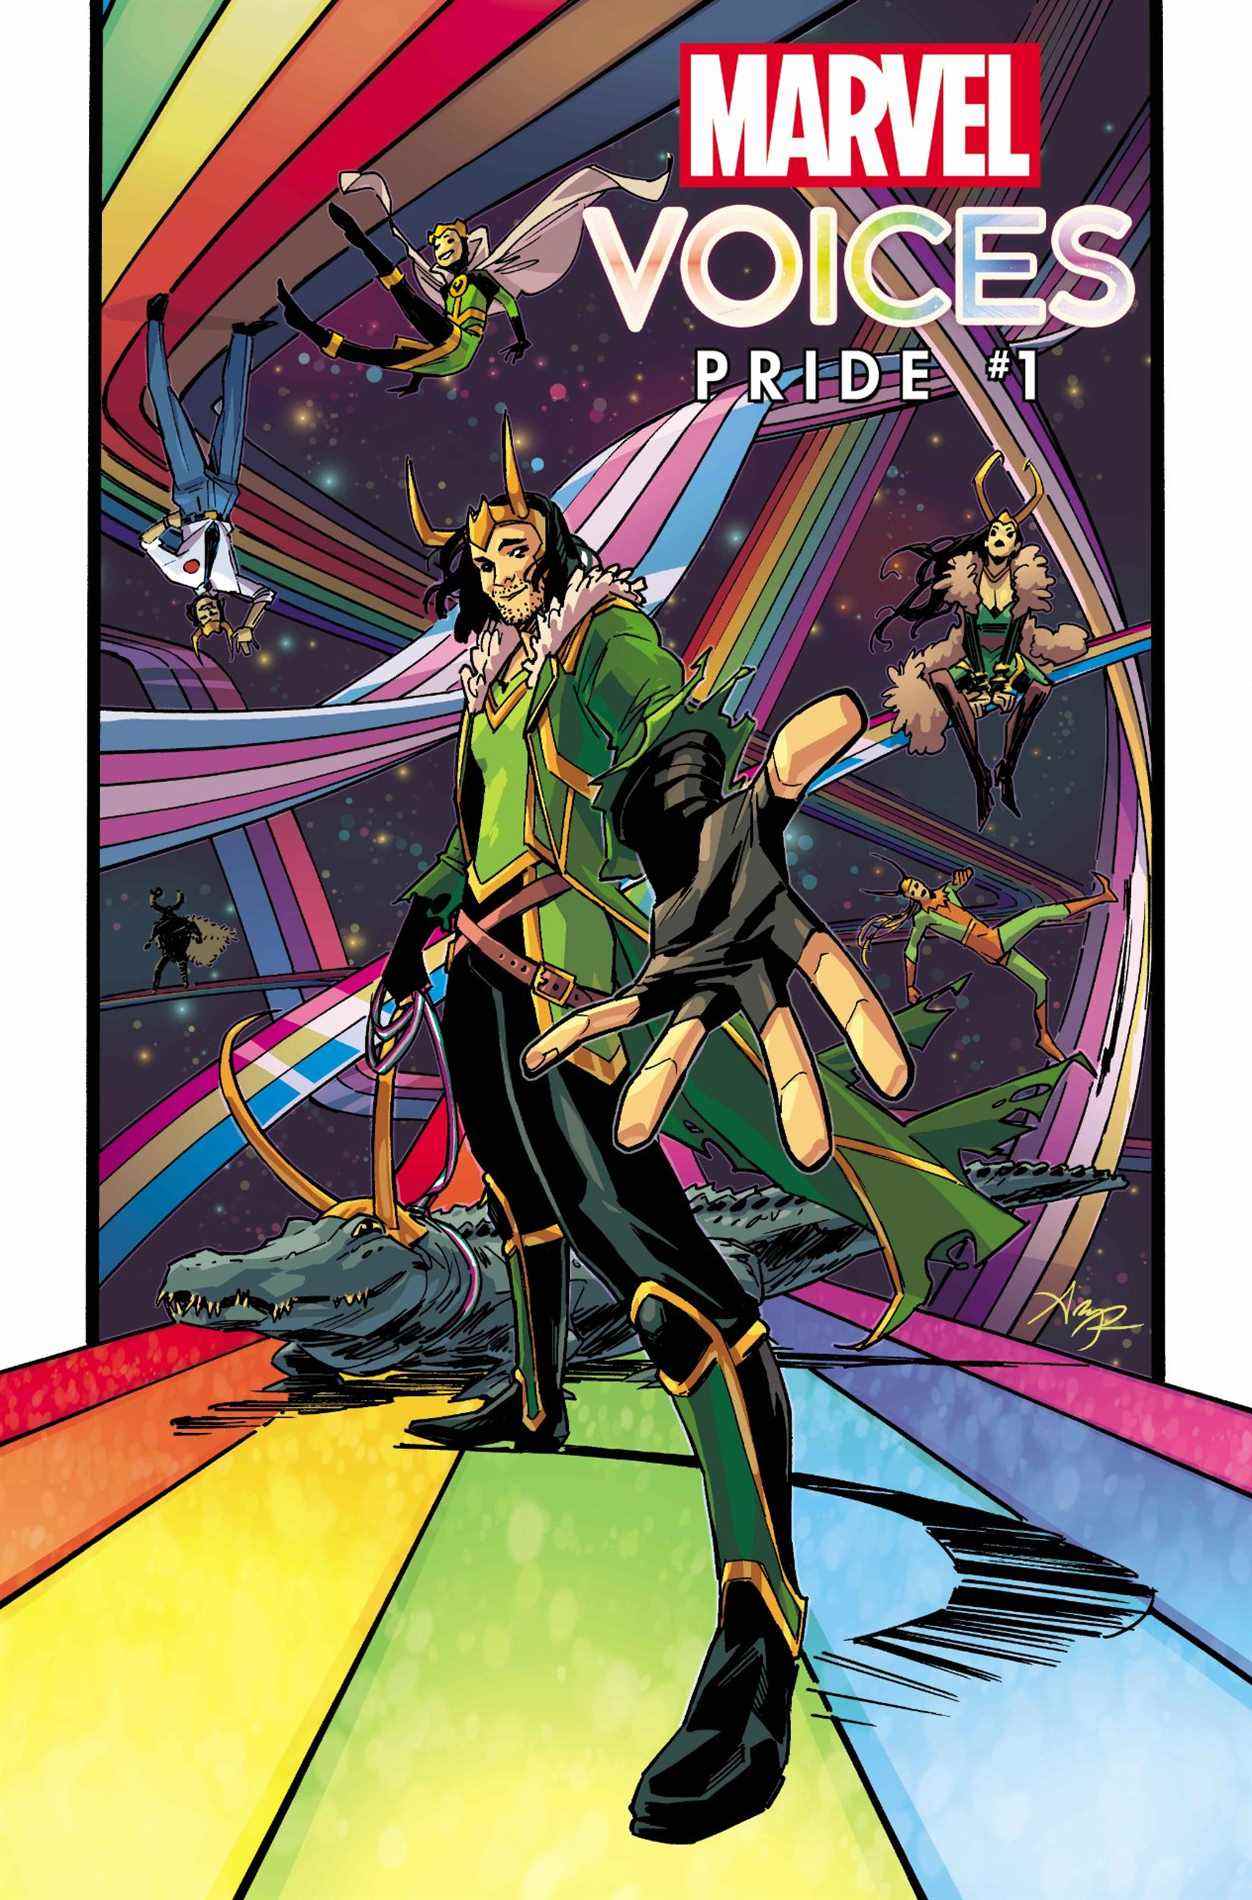 Les voix de Marvel : Pride 2022